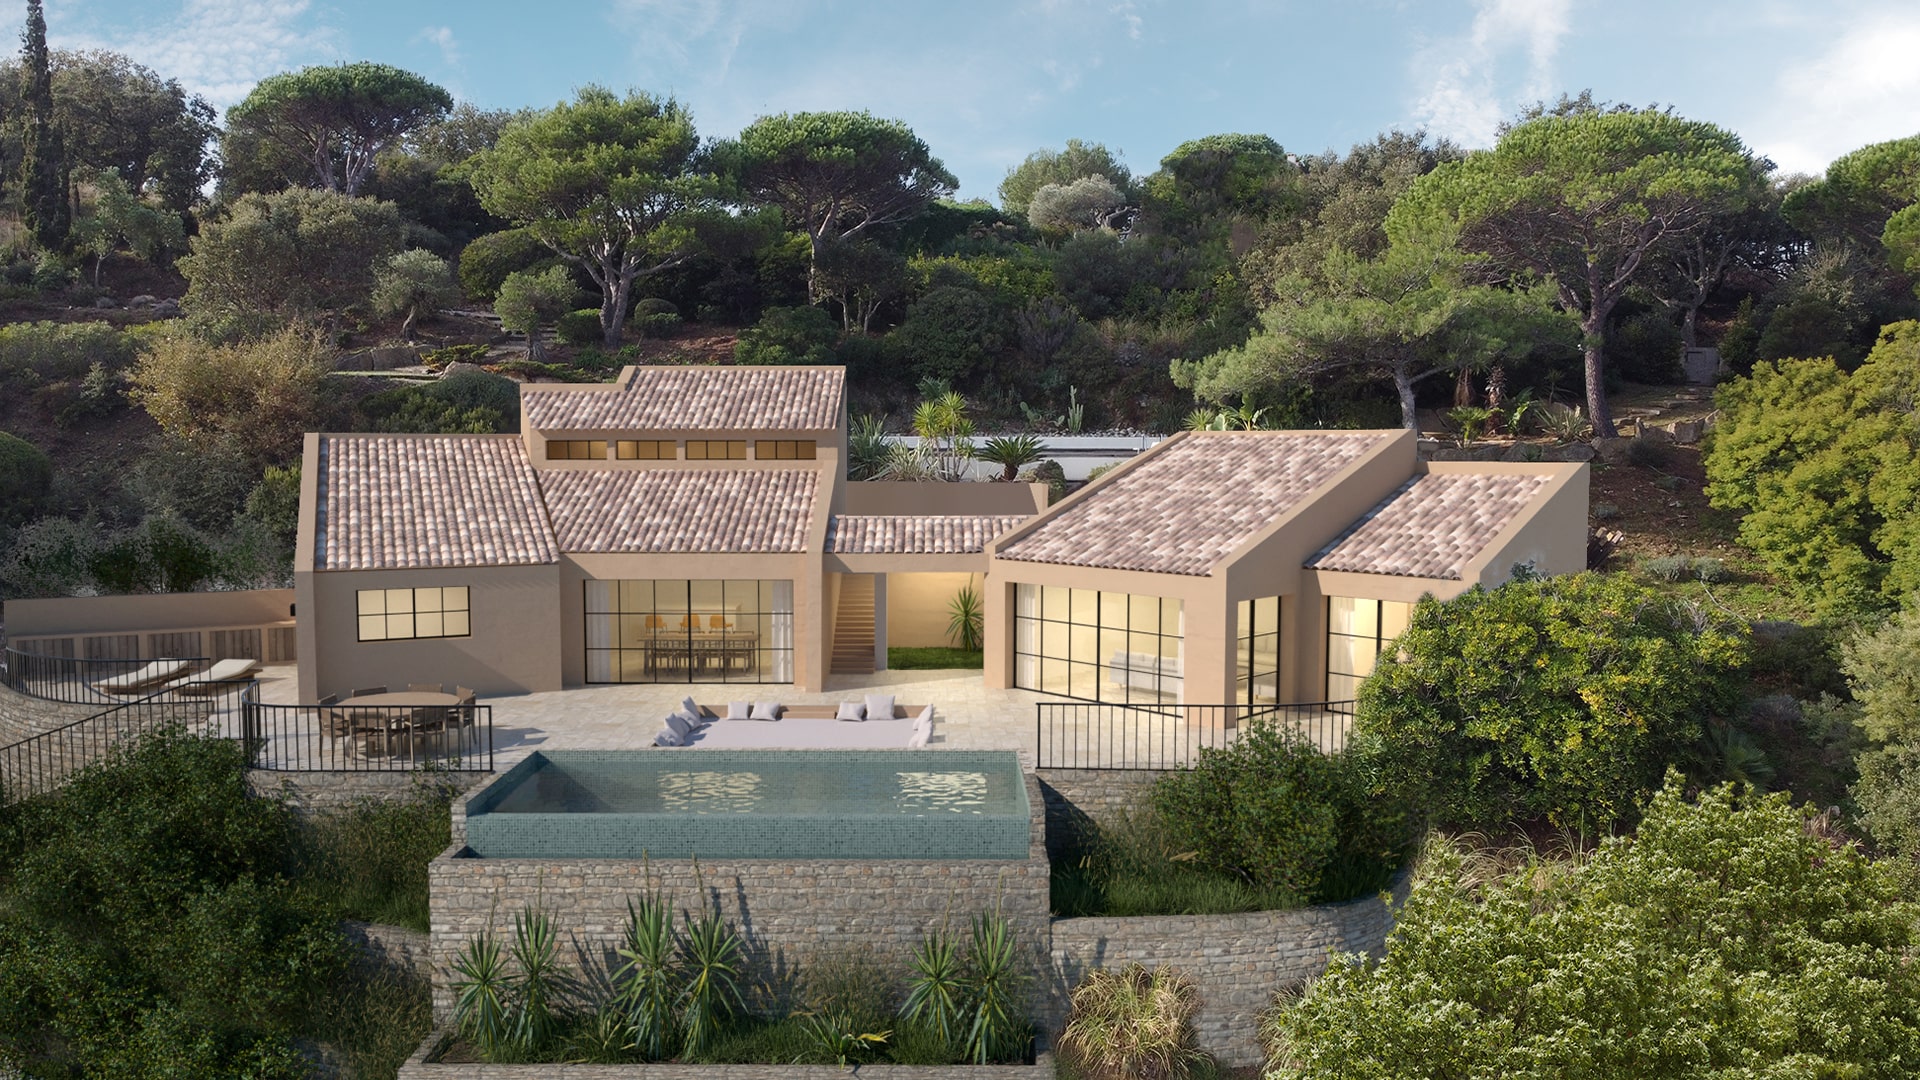 Agence Boris Folli - Architecture and project management - Saint-Tropez - Villa project